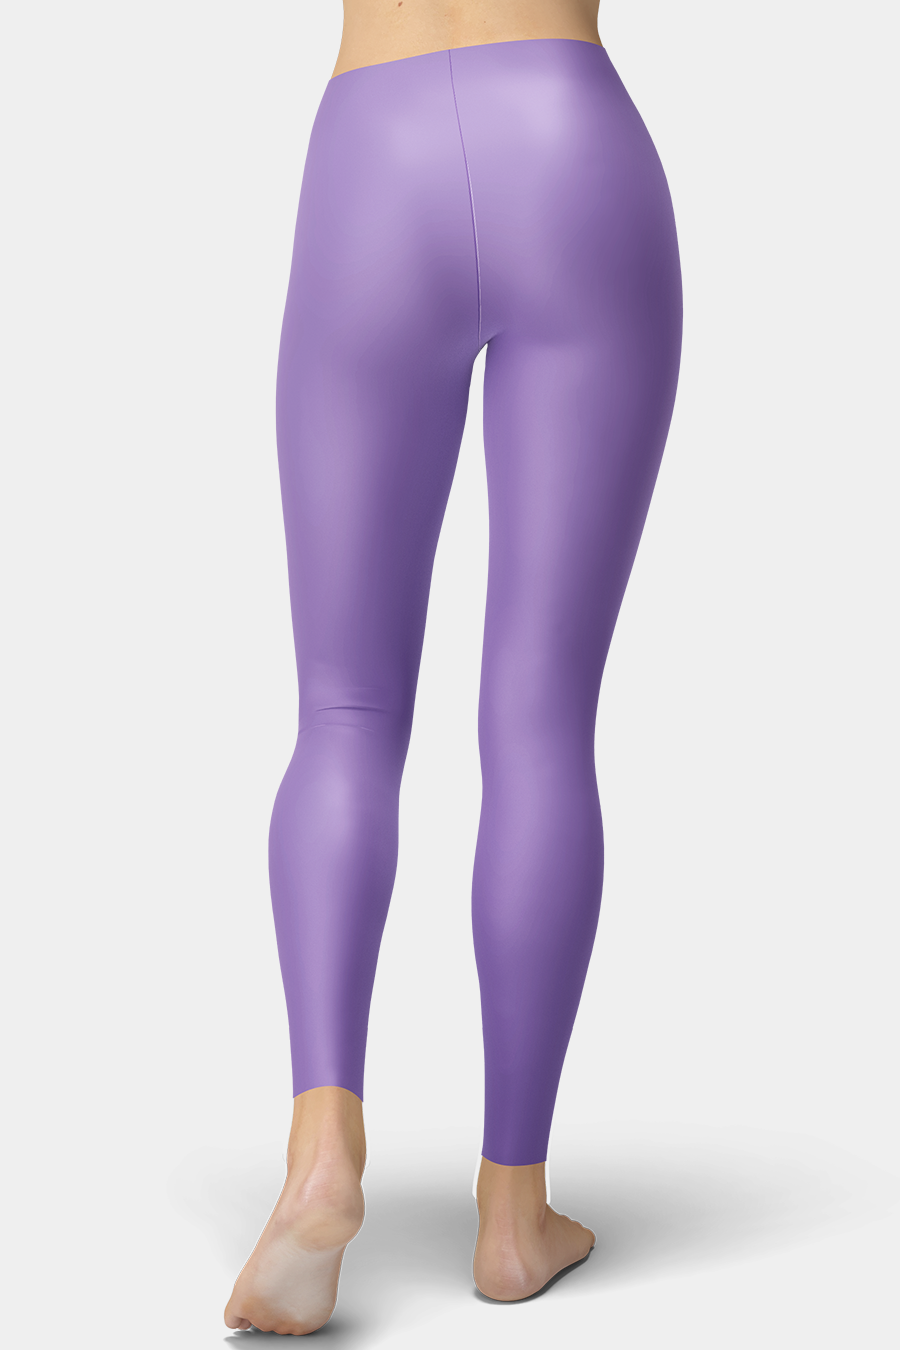 Lavender Purple Leggings – SeeMyLeggings